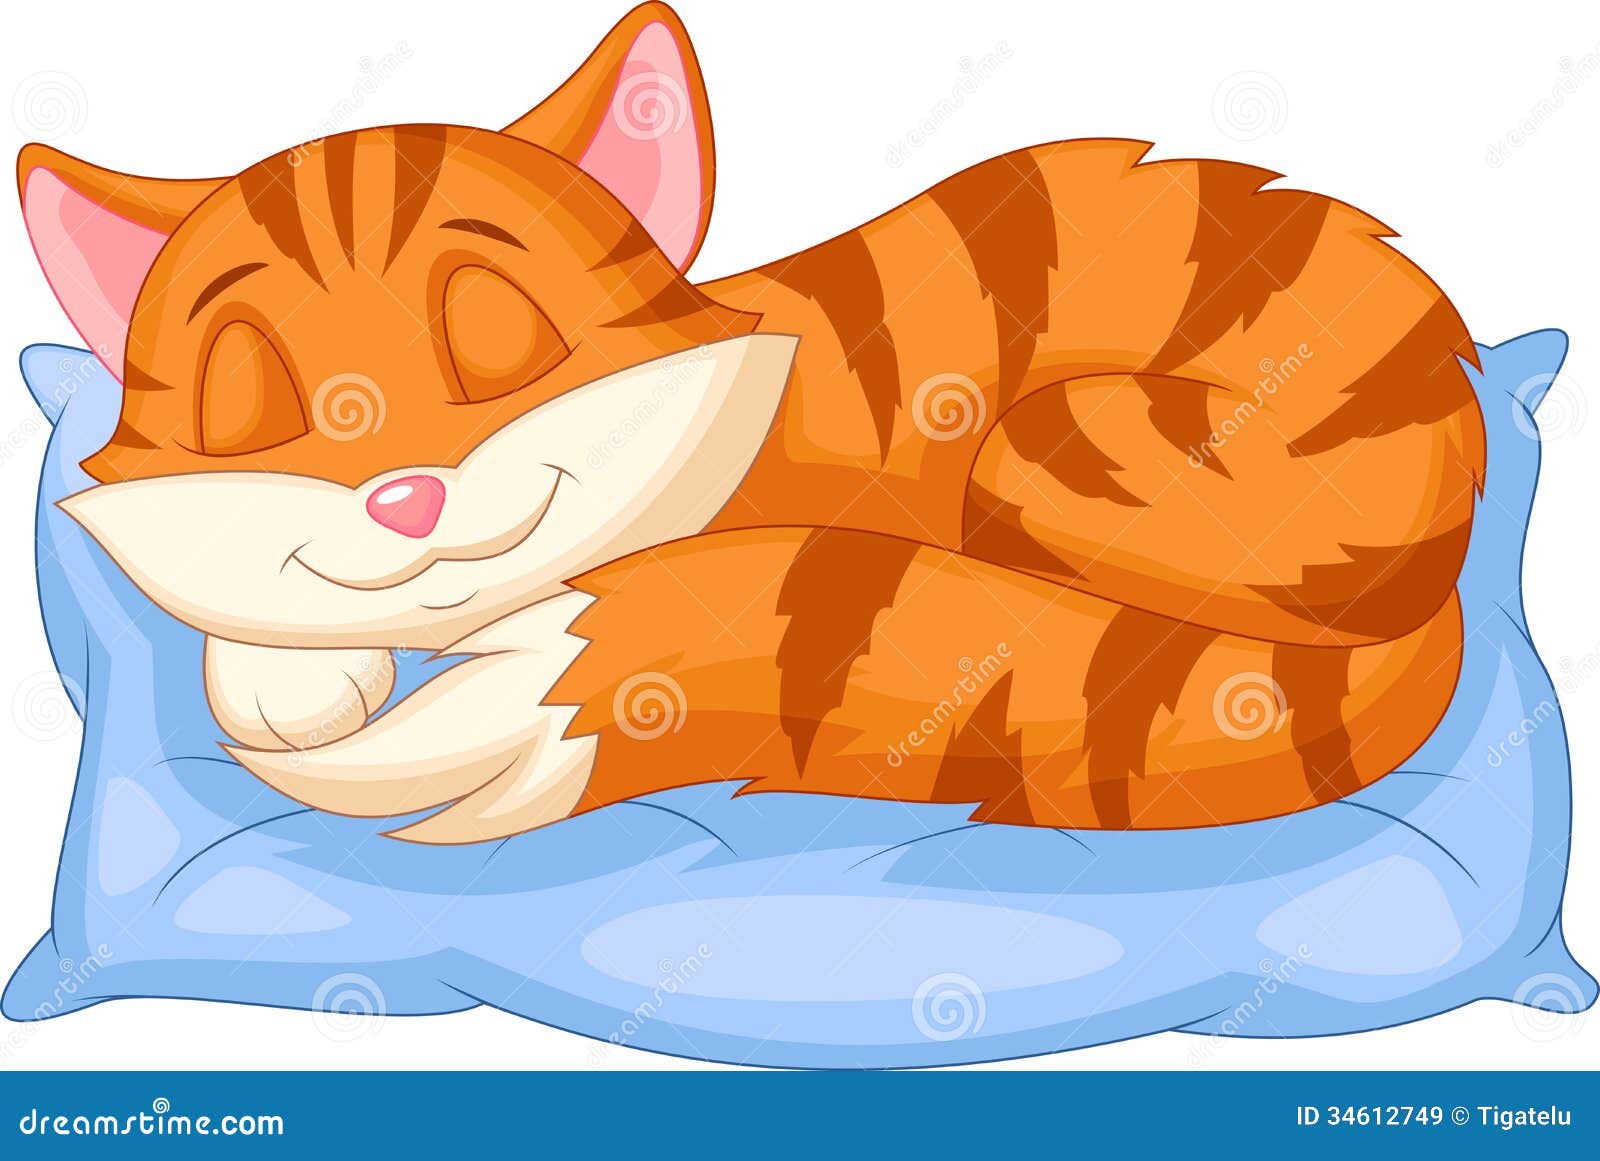 cute cat cartoon sleeping on a pillow